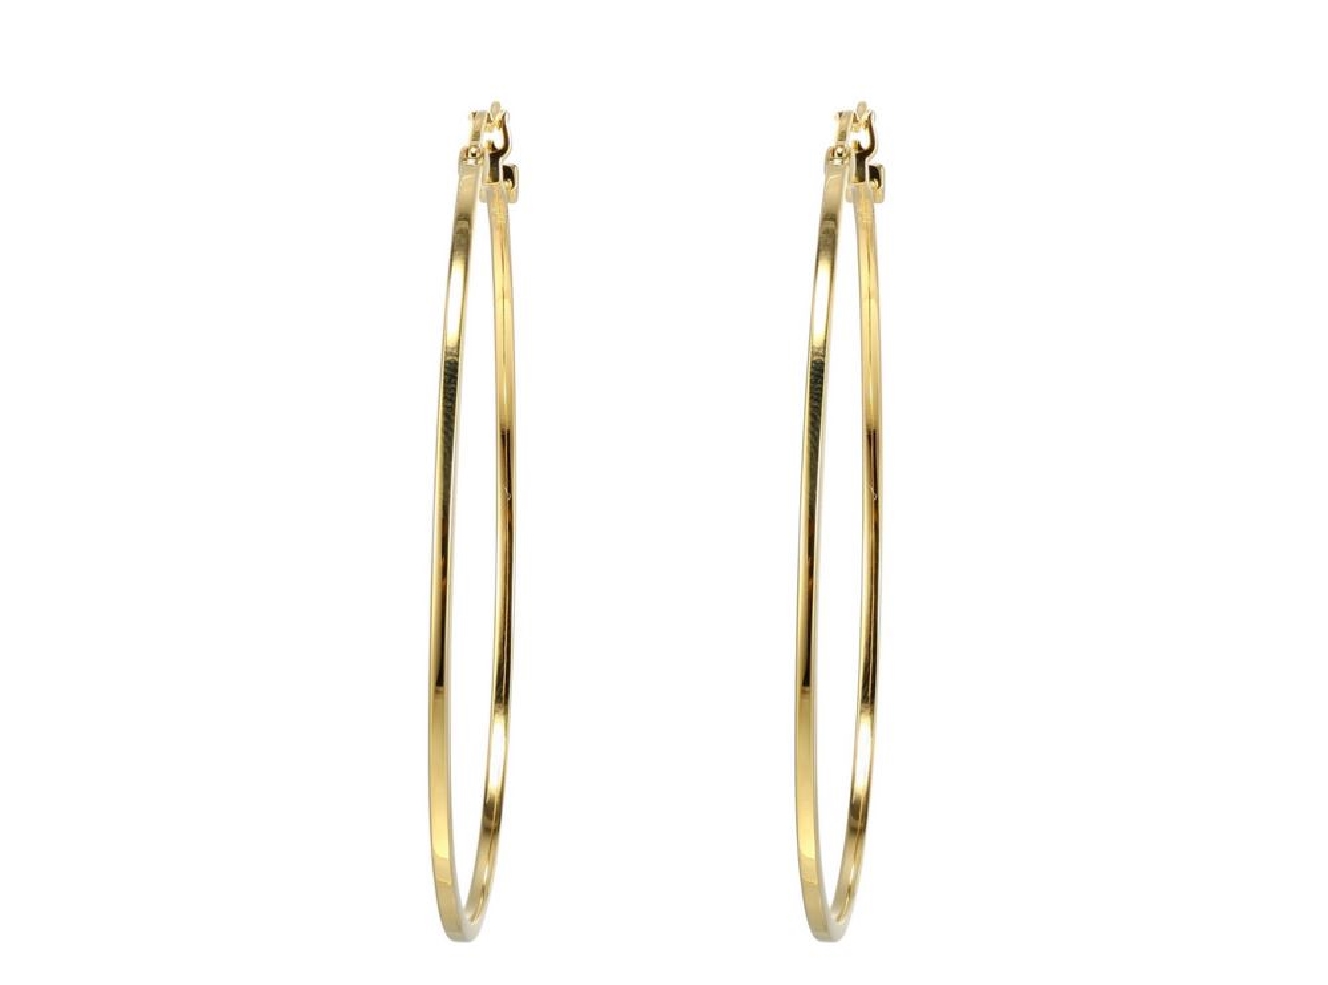 ELLE
Hoop Earrings
Gold Plated Silver
55mm
...